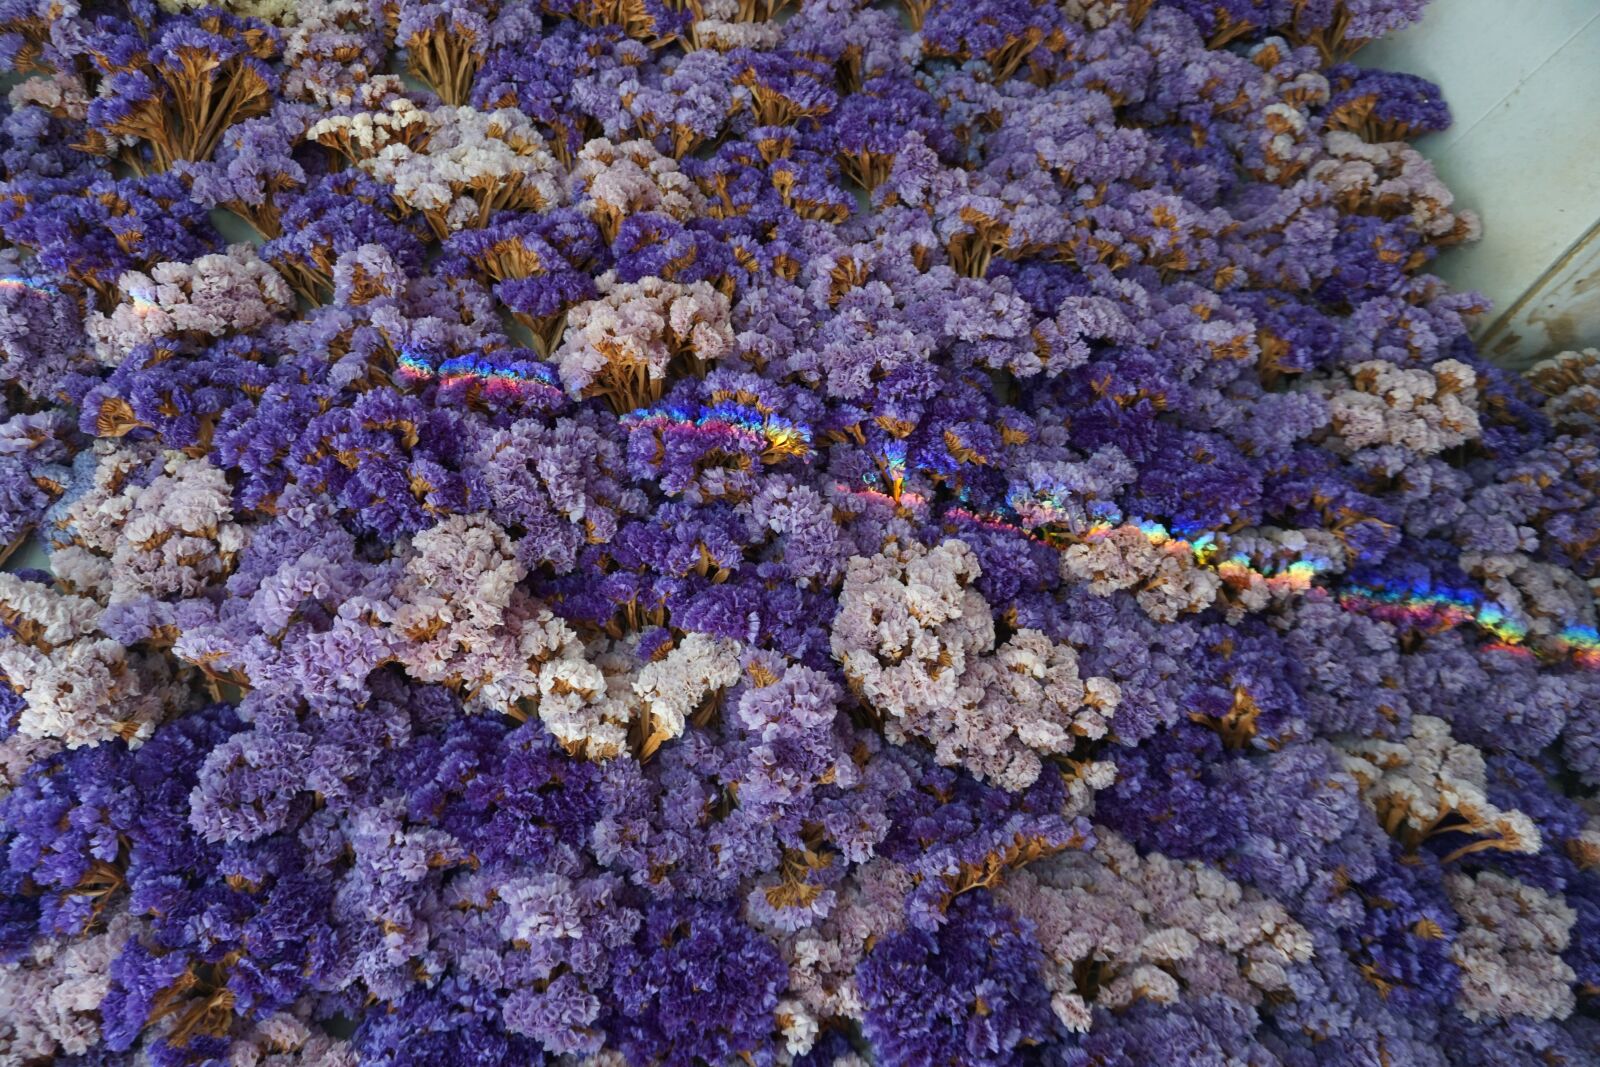 Sony a5100 sample photo. Rainbow, flower, flowers photography